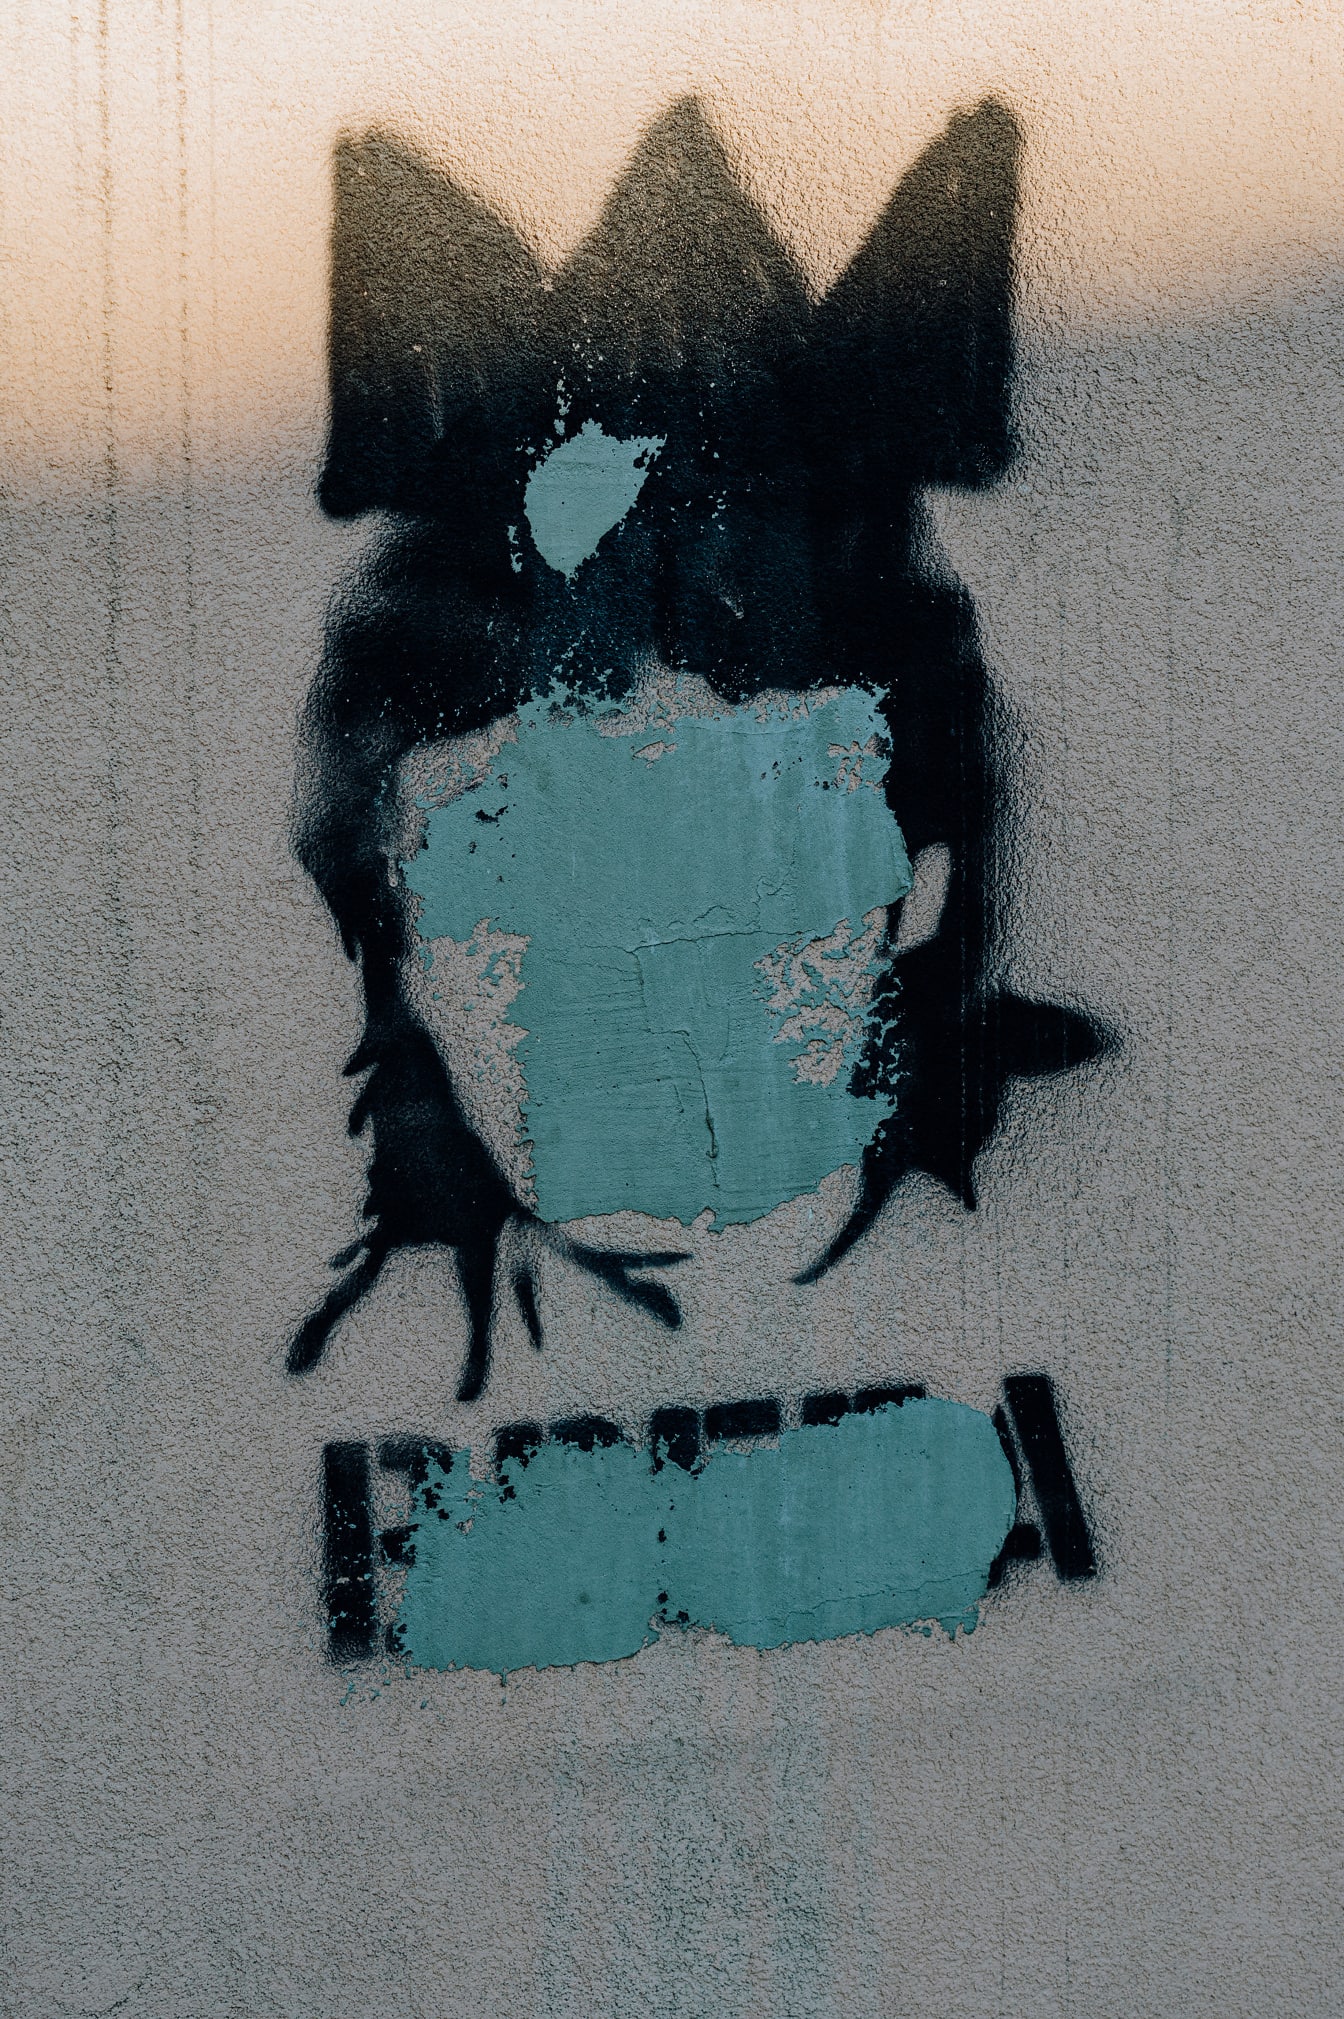 Yüzü boyanmış siyah kafa grafitisi kentsel vandalizm